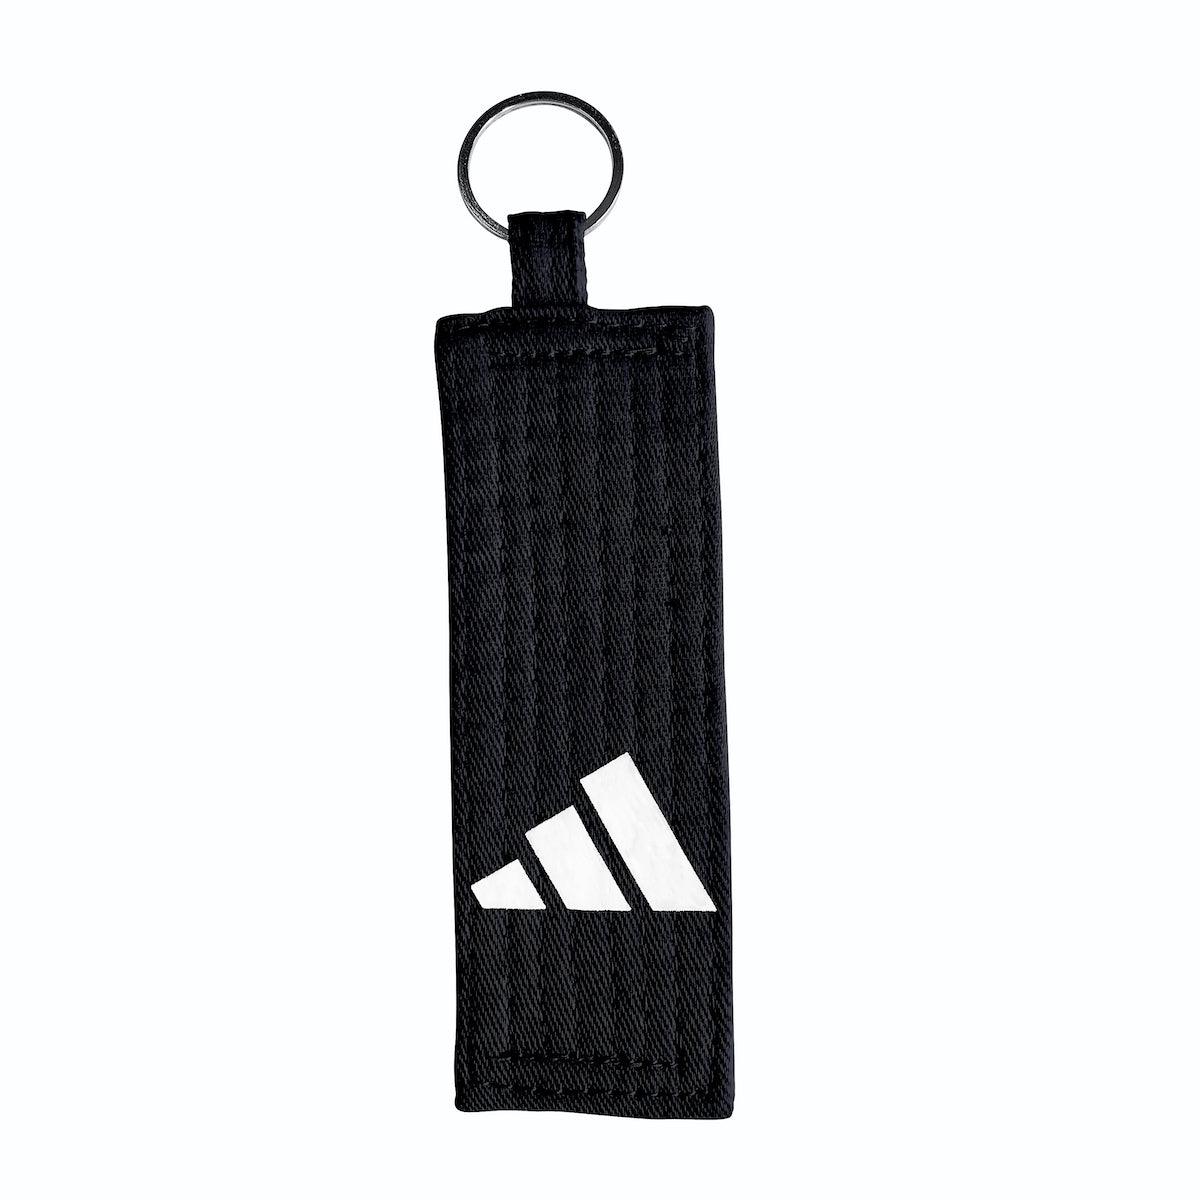 Porte-clés mini ceinture noire Adidas (ADIGA09)